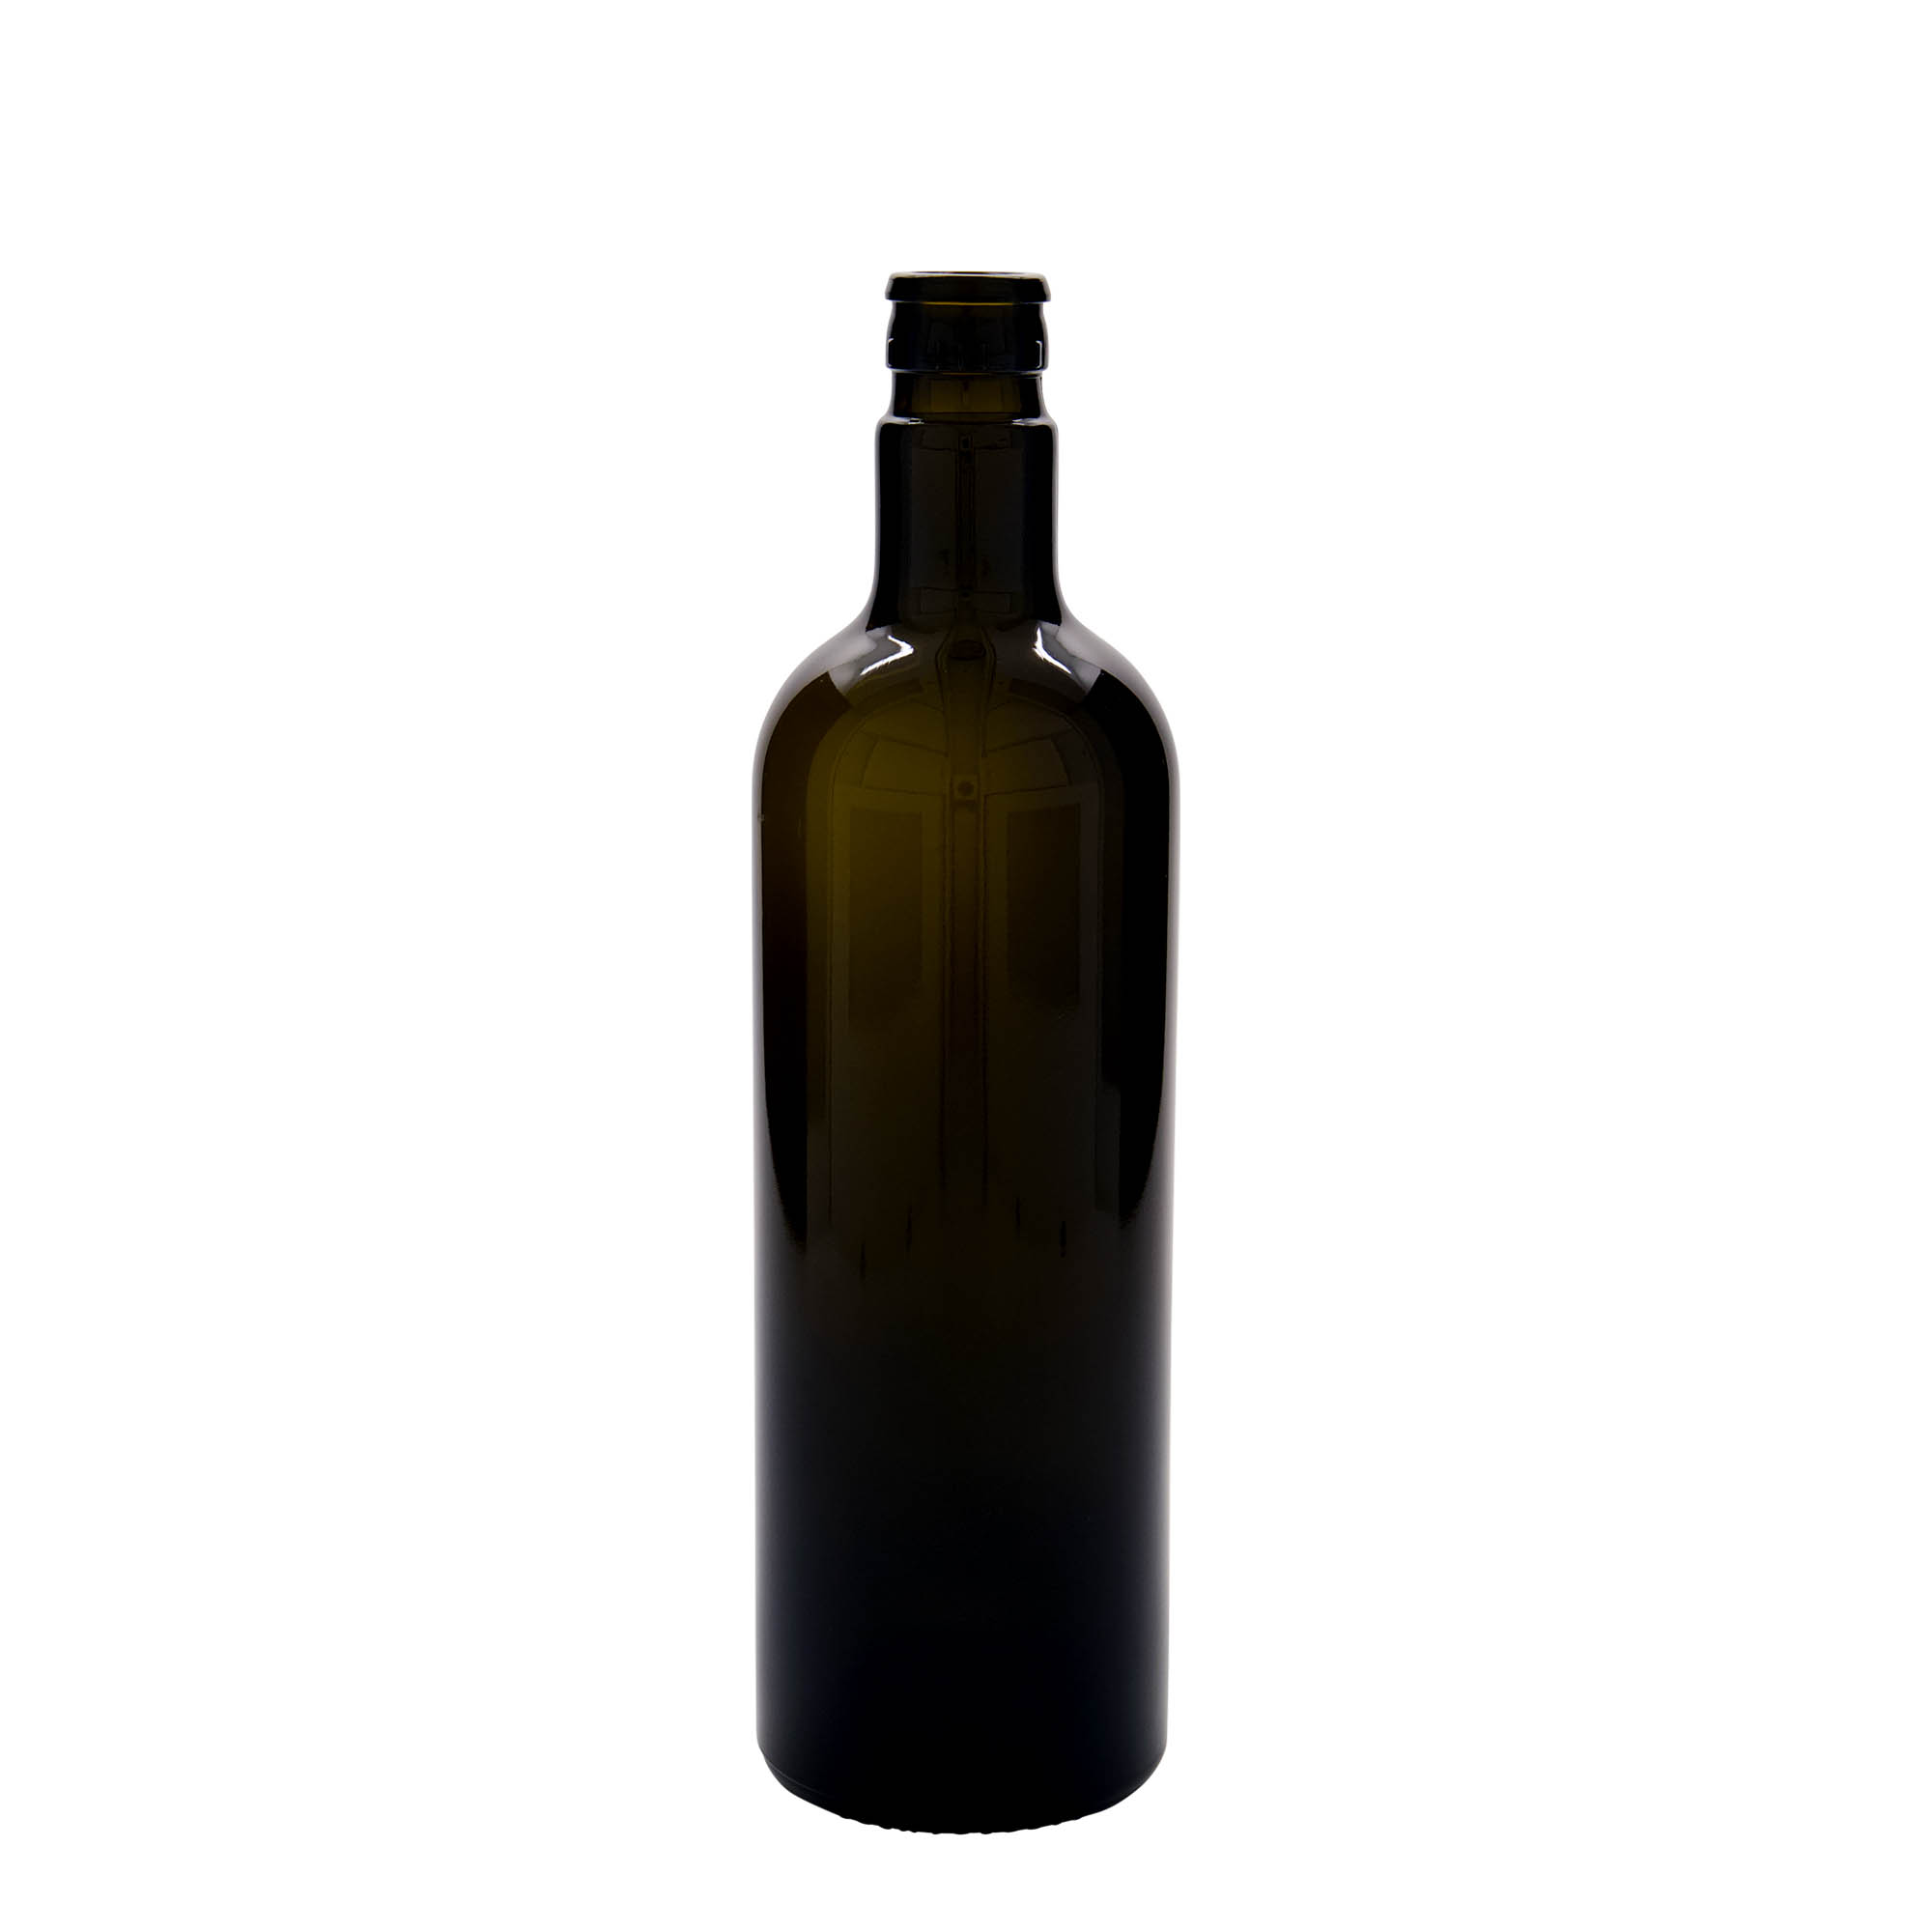 750 ml butelka na ocet/olej 'Willy New', szkło, kolor zielony antyczny, zamknięcie: DOP